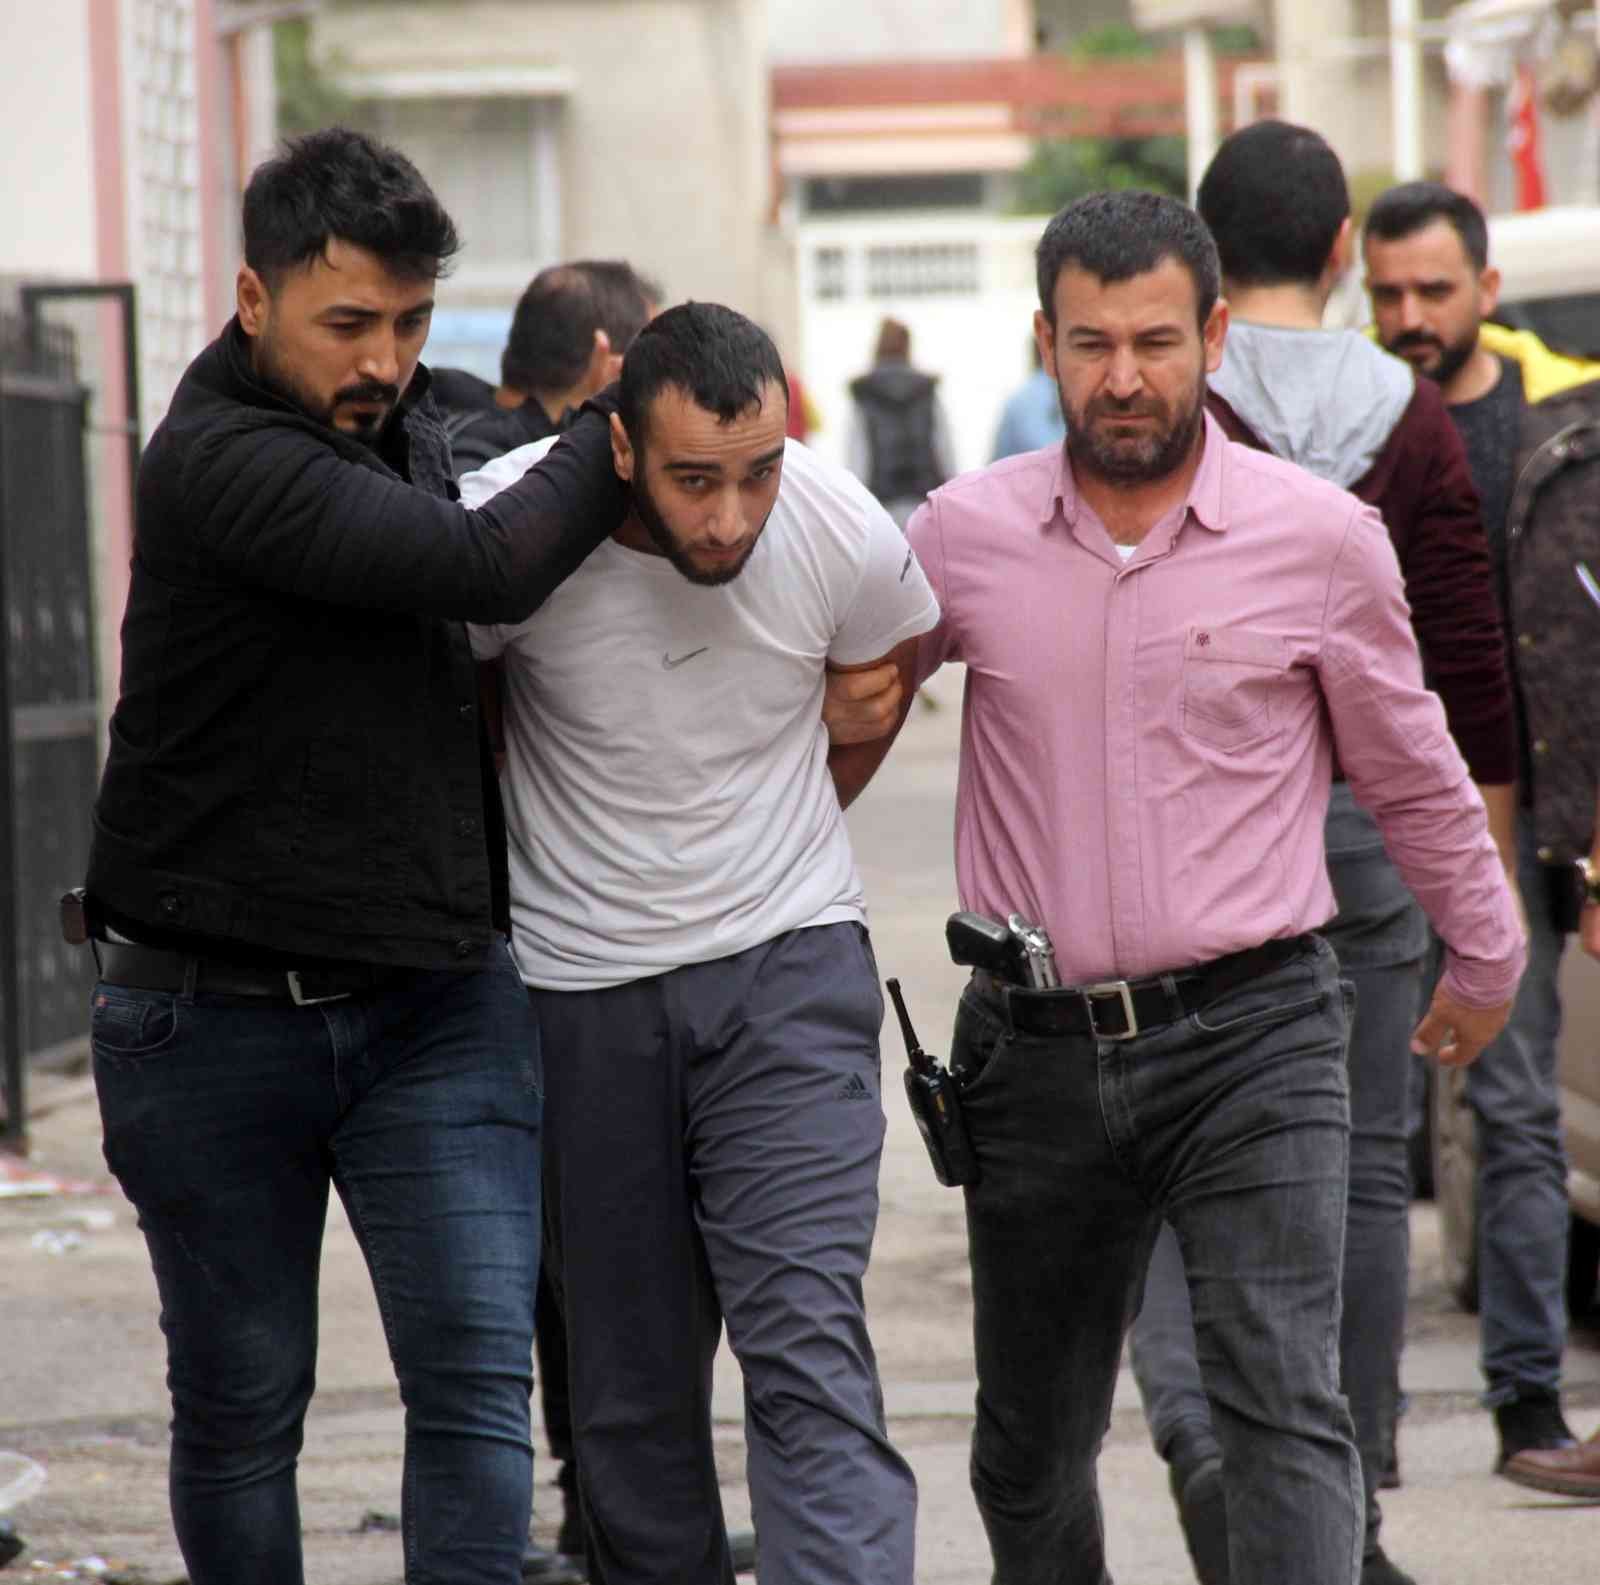 Film gibi cinayette 3 zanlı daha tutuklandı #adana